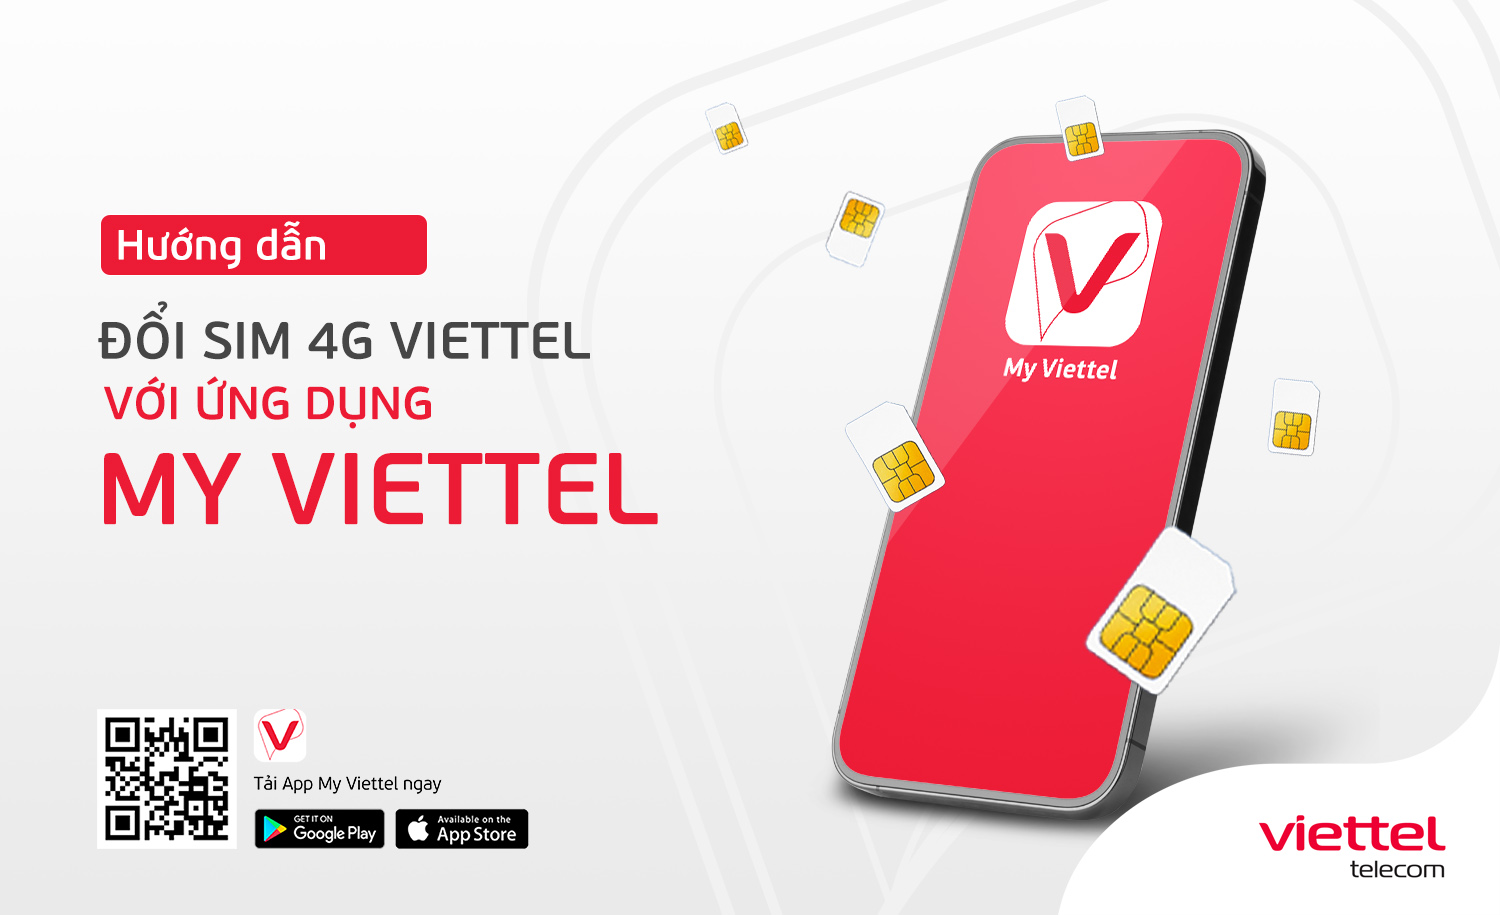 SIM VIETTEL 6V120 12V120 GỌI ĐIỆN LÊN MẠNG 1 NĂM MIỄN PHÍ  SIM Data  SIM  3G  4G Thương hiệu Viettel  DiDongVietNamcom